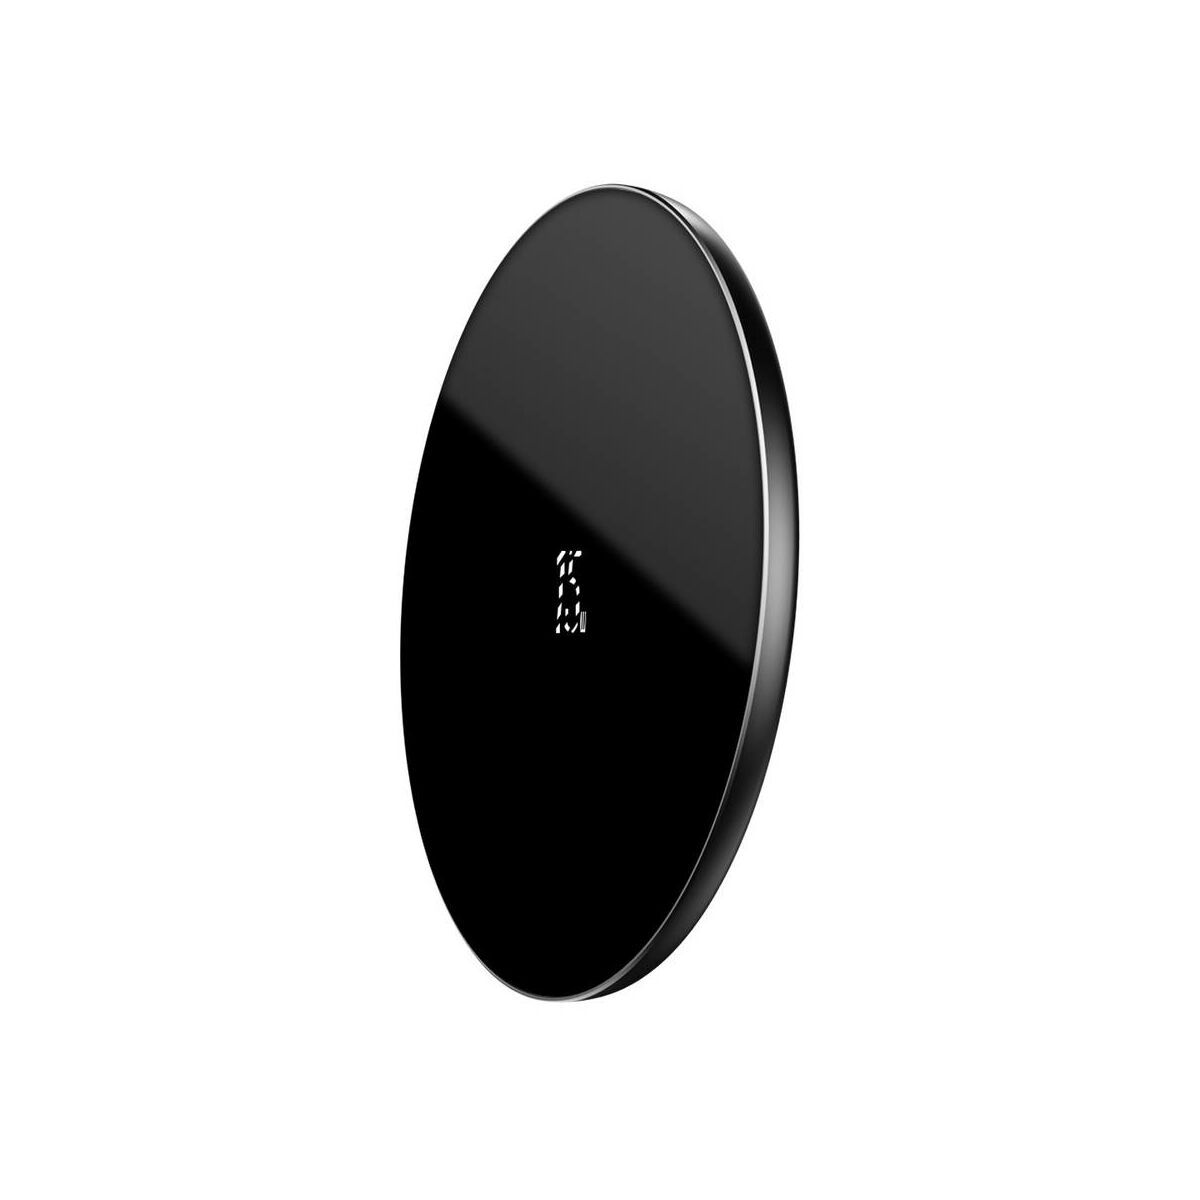 Kép 5/9 - Baseus vezeték nélküli töltő, Simple 2-in-1 frisített verzió, telefon + AirPods, 15W, fekete (WXJK-B01)